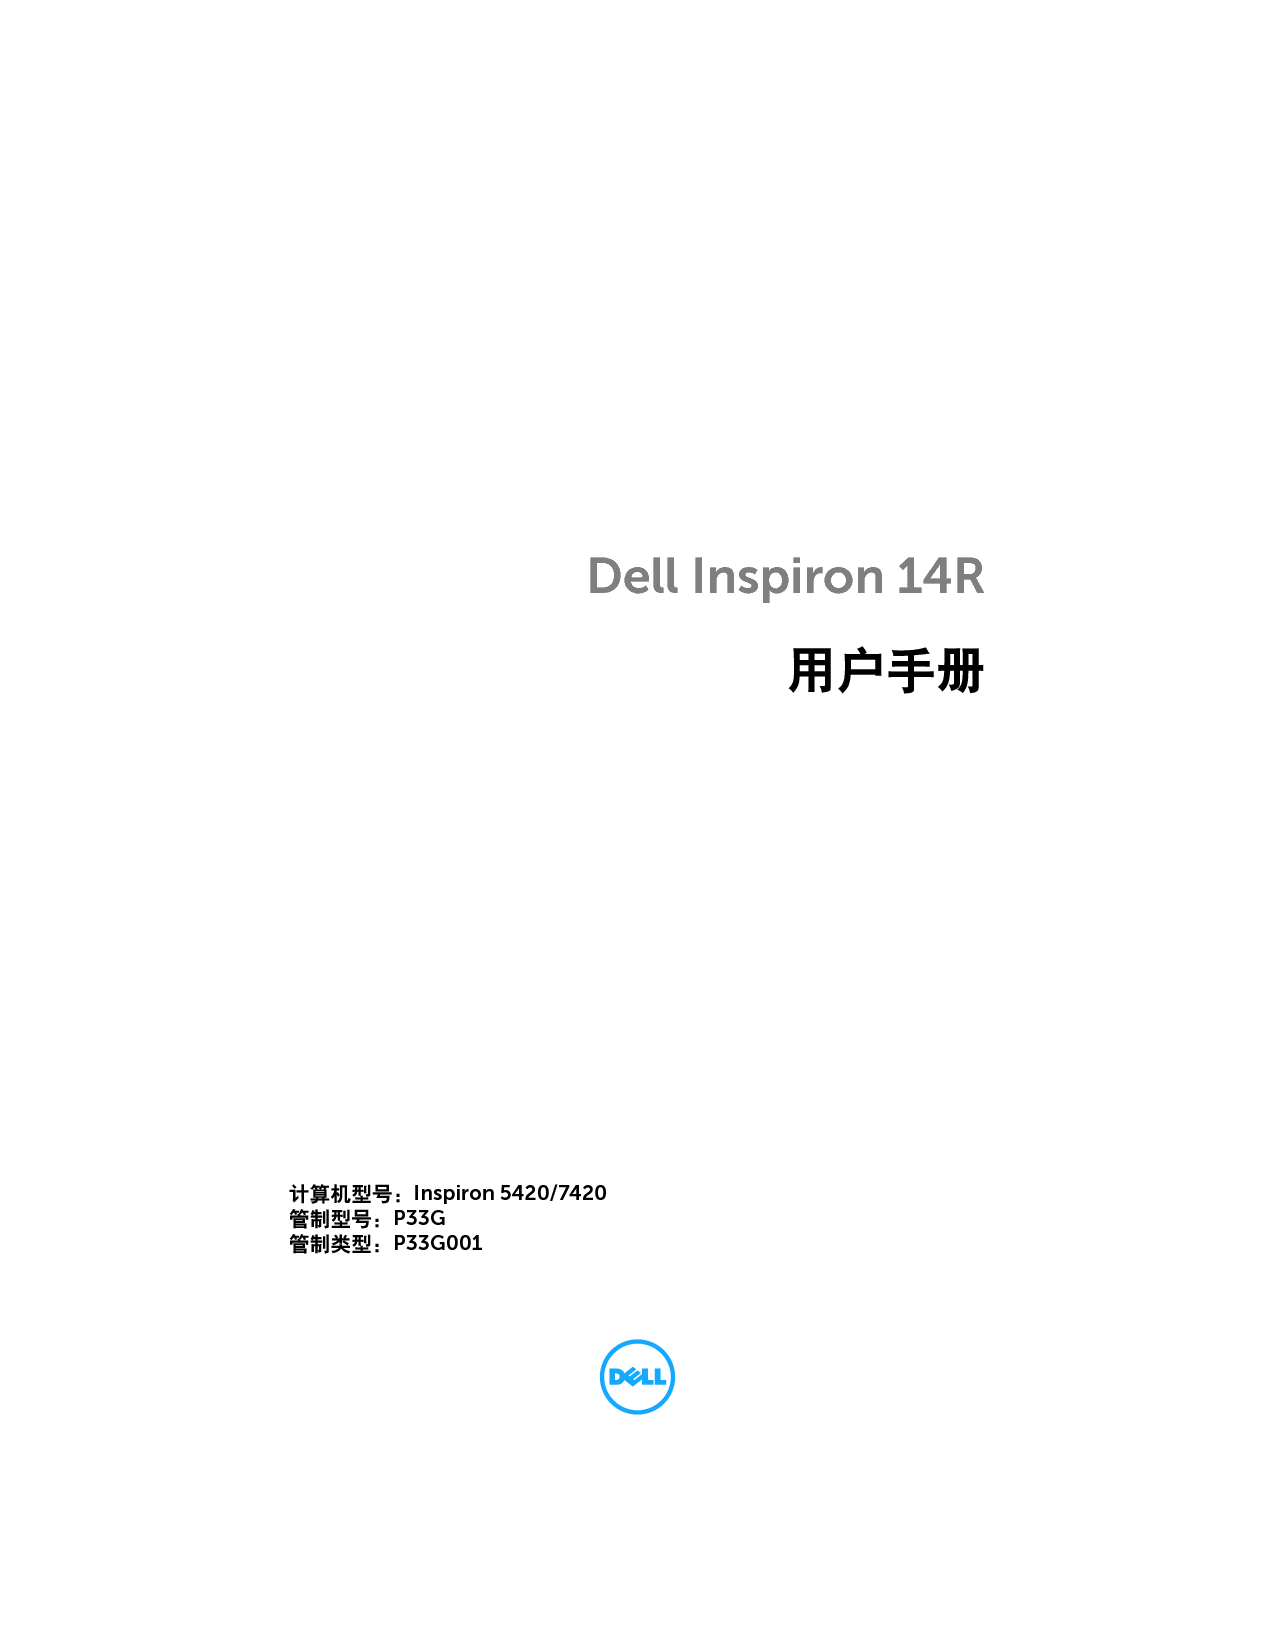 戴尔 Dell Inspiron 14R 5420 用户手册 封面